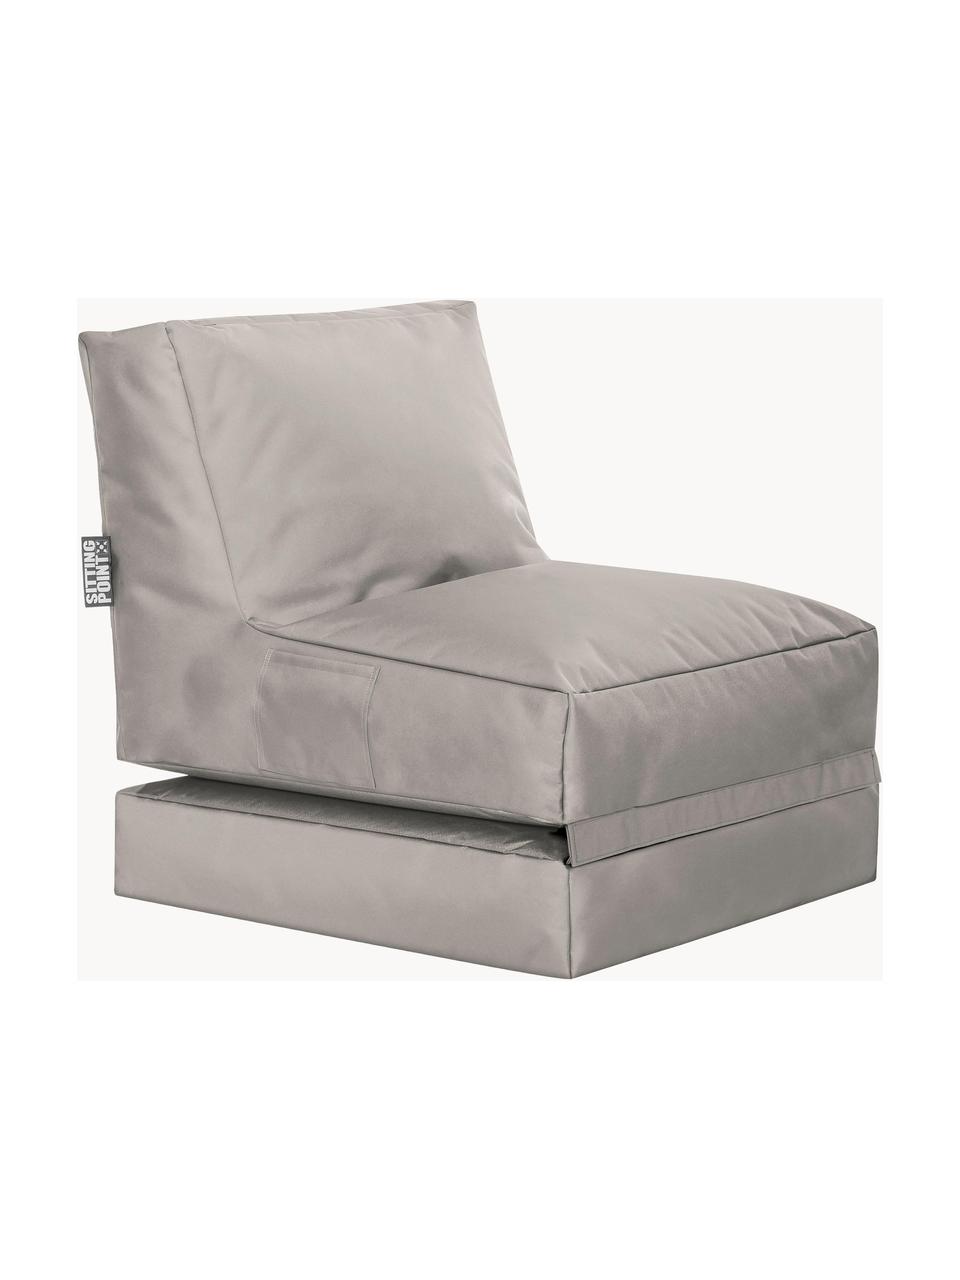 Outdoor loungefauteuil Pop Up met ligfunctie, Bekleding: 100% polyester Binnenzijd, Geweven stof lichtgrijs, B 70 x H 90 cm